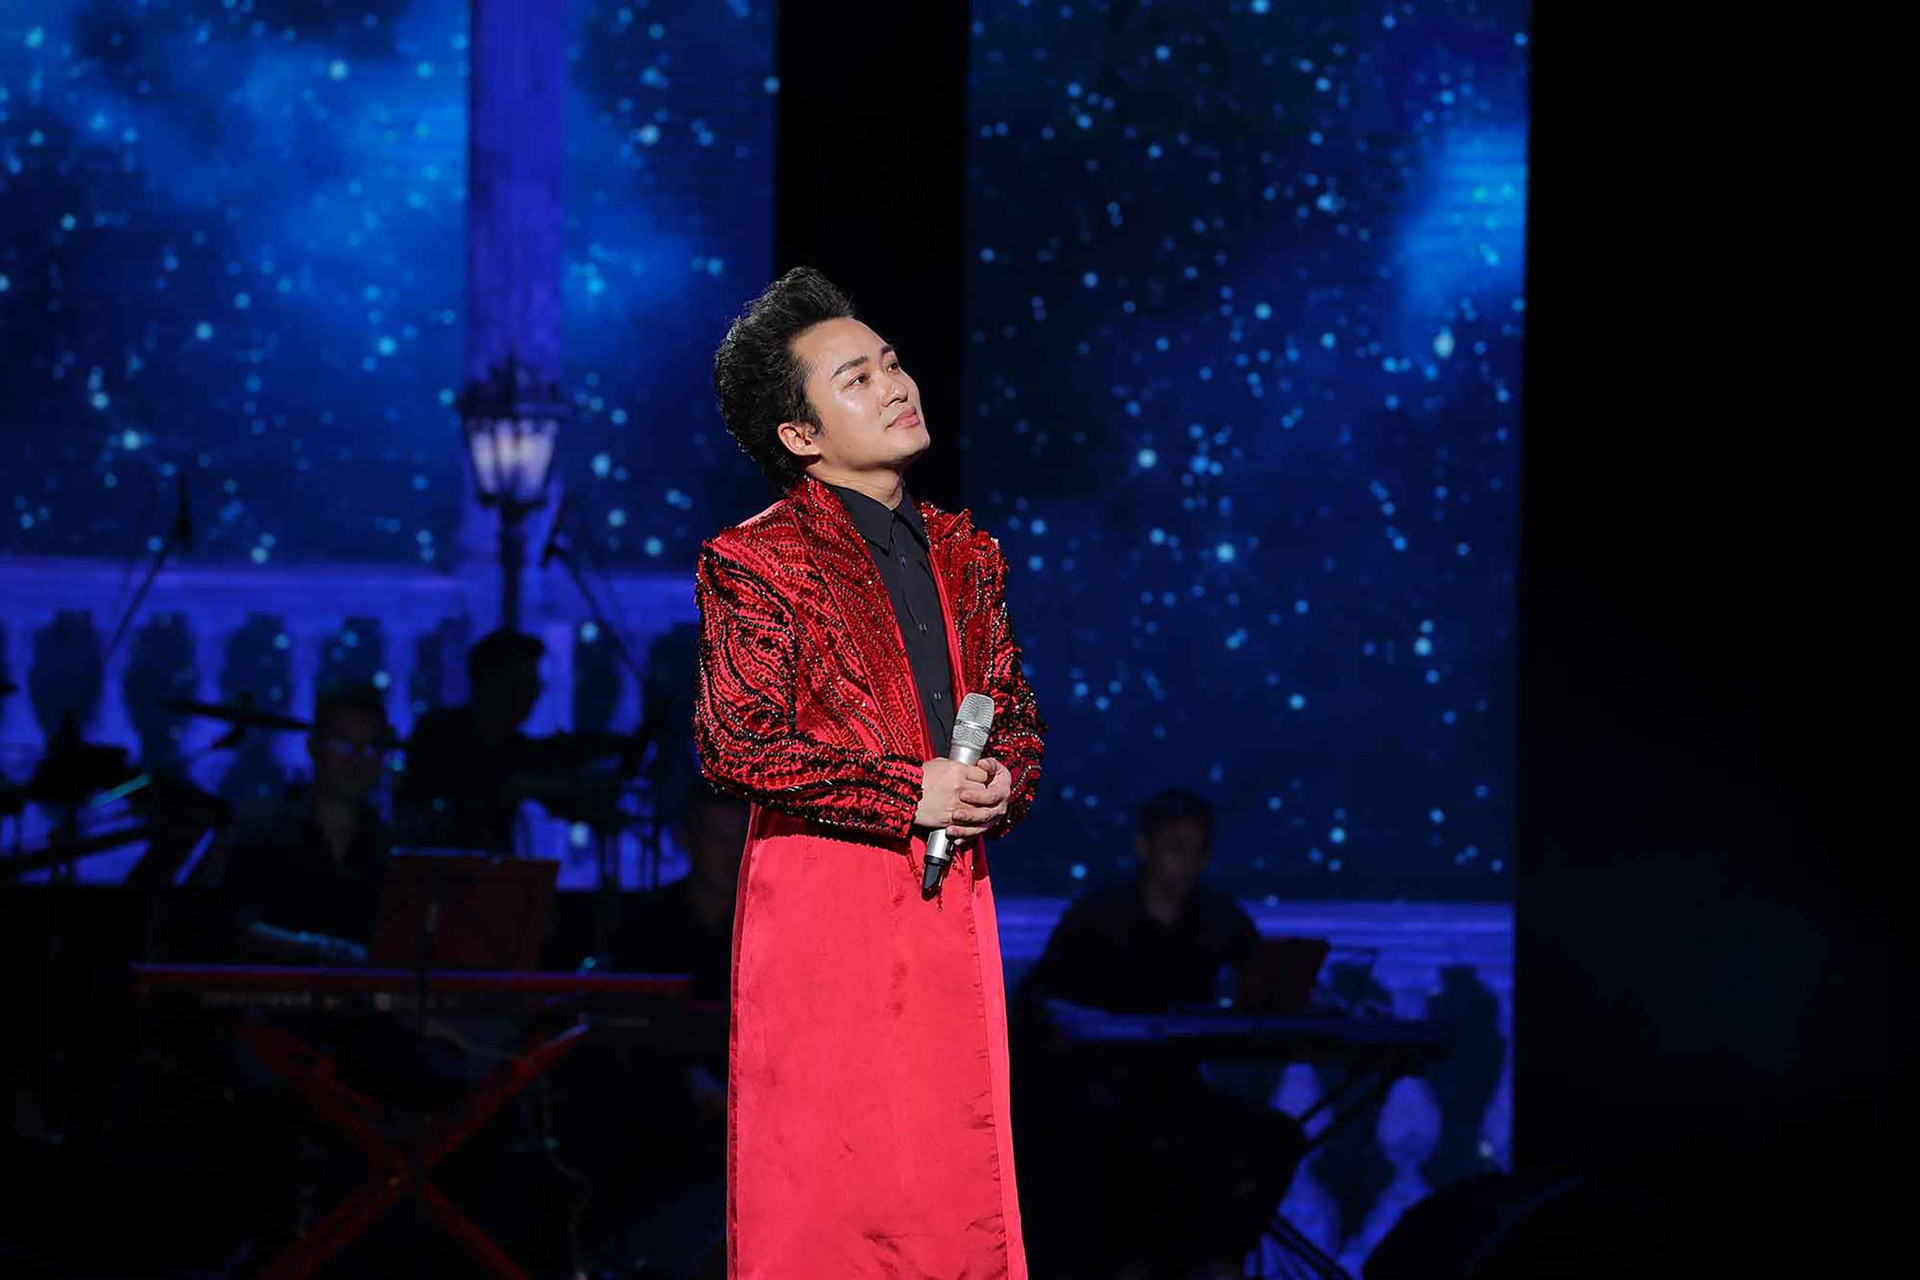 Tùng Dương hát live 'Ngày chưa giông bão', khán giả cổ vũ nồng nhiệt - 1